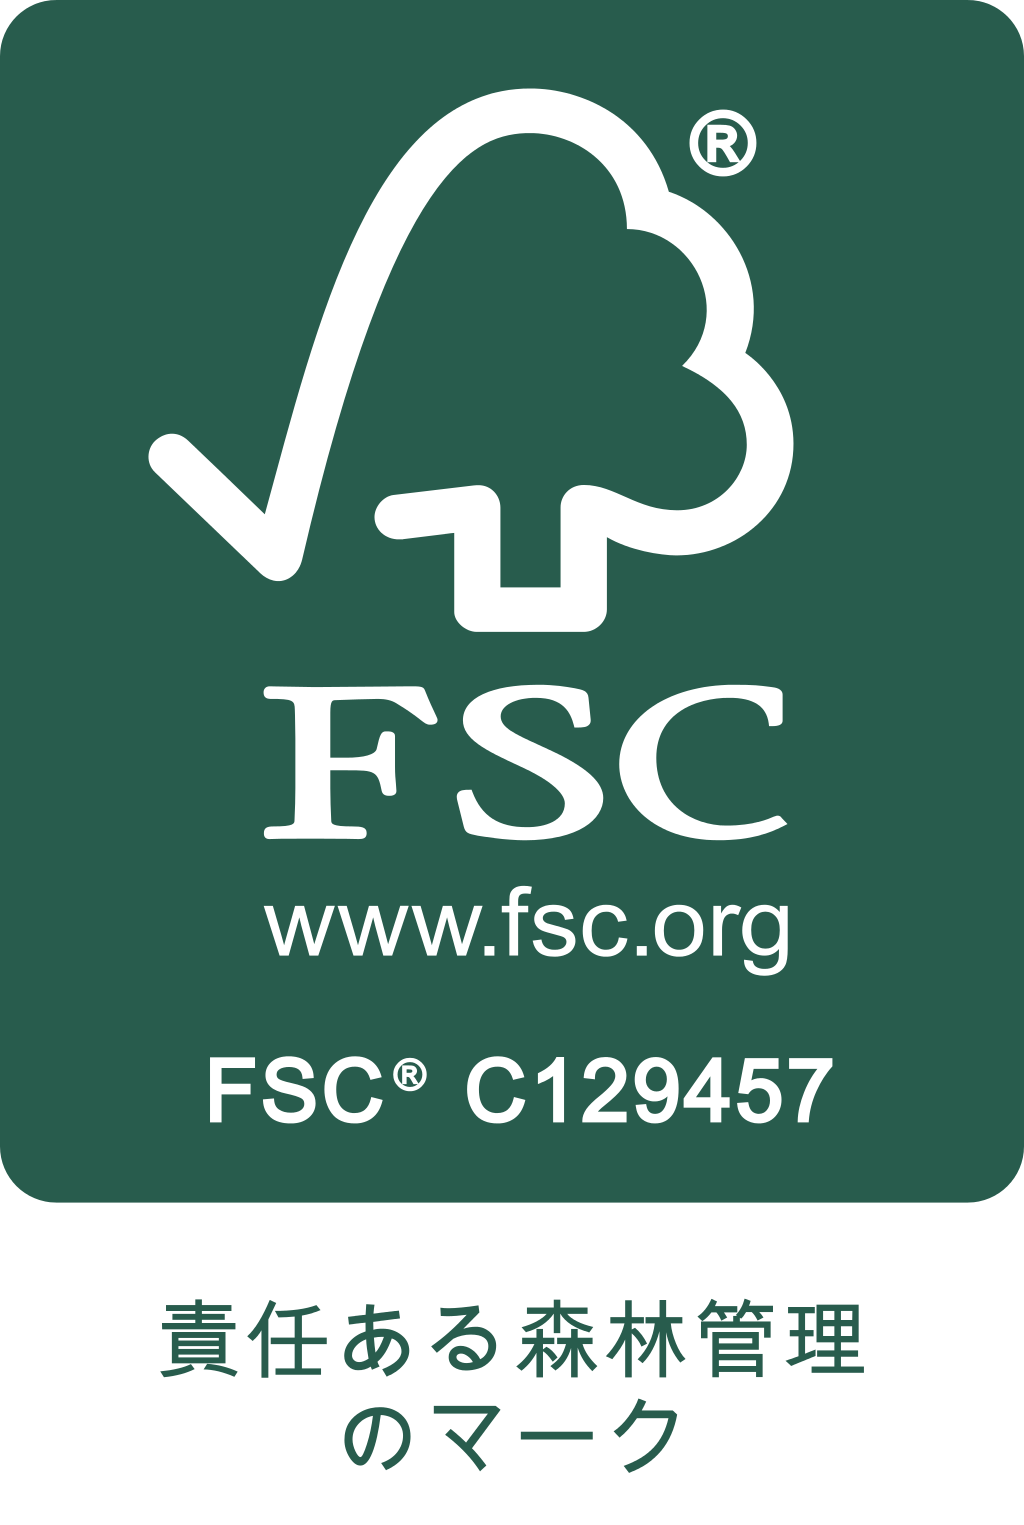 FSC 責任ある森林管理のマーク